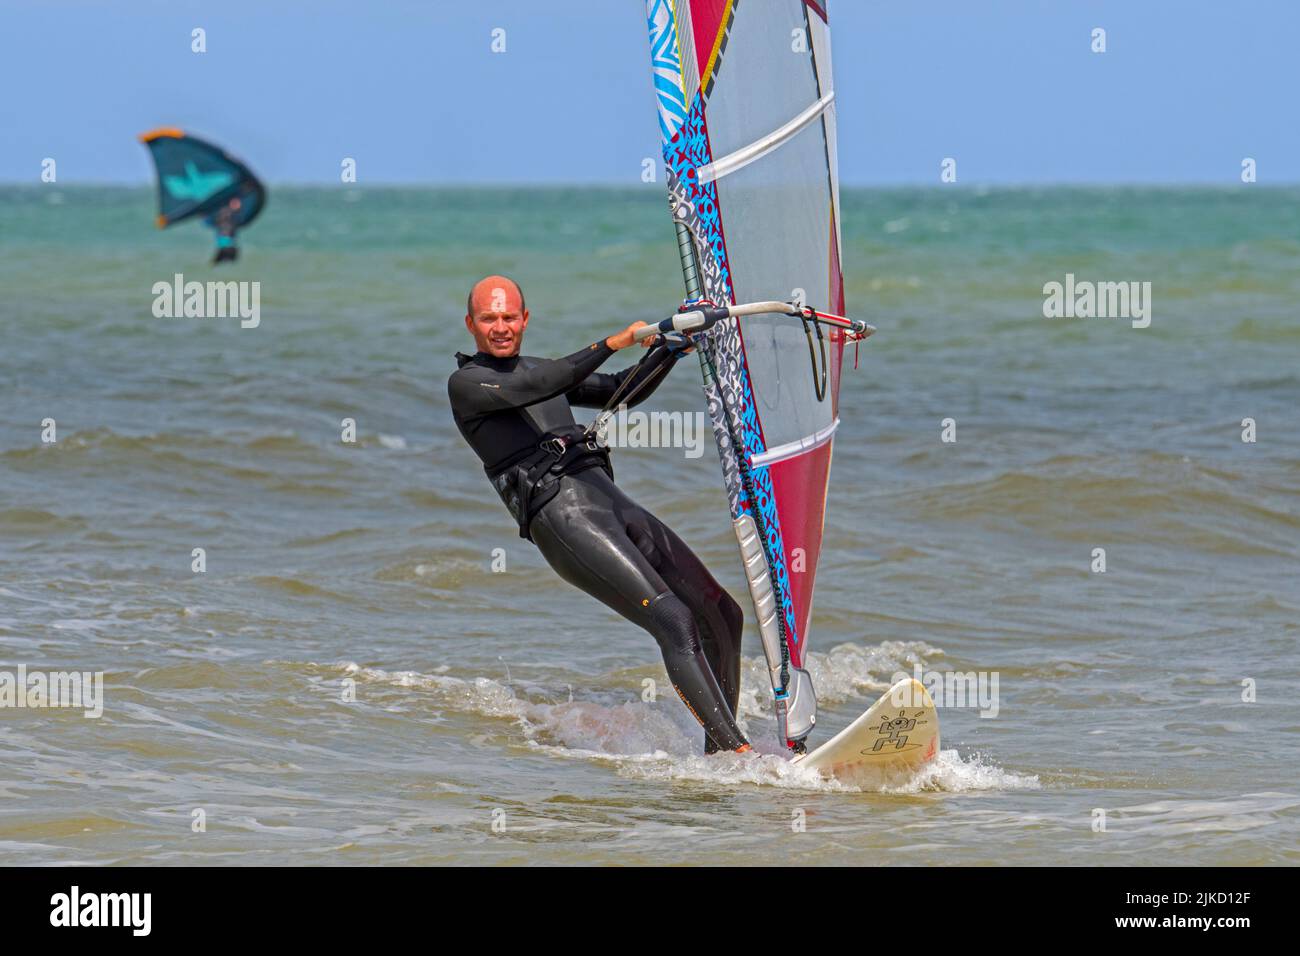 Windsurfista recreativo en traje negro practicando windsurf clásico a lo largo de la costa del Mar del Norte Foto de stock